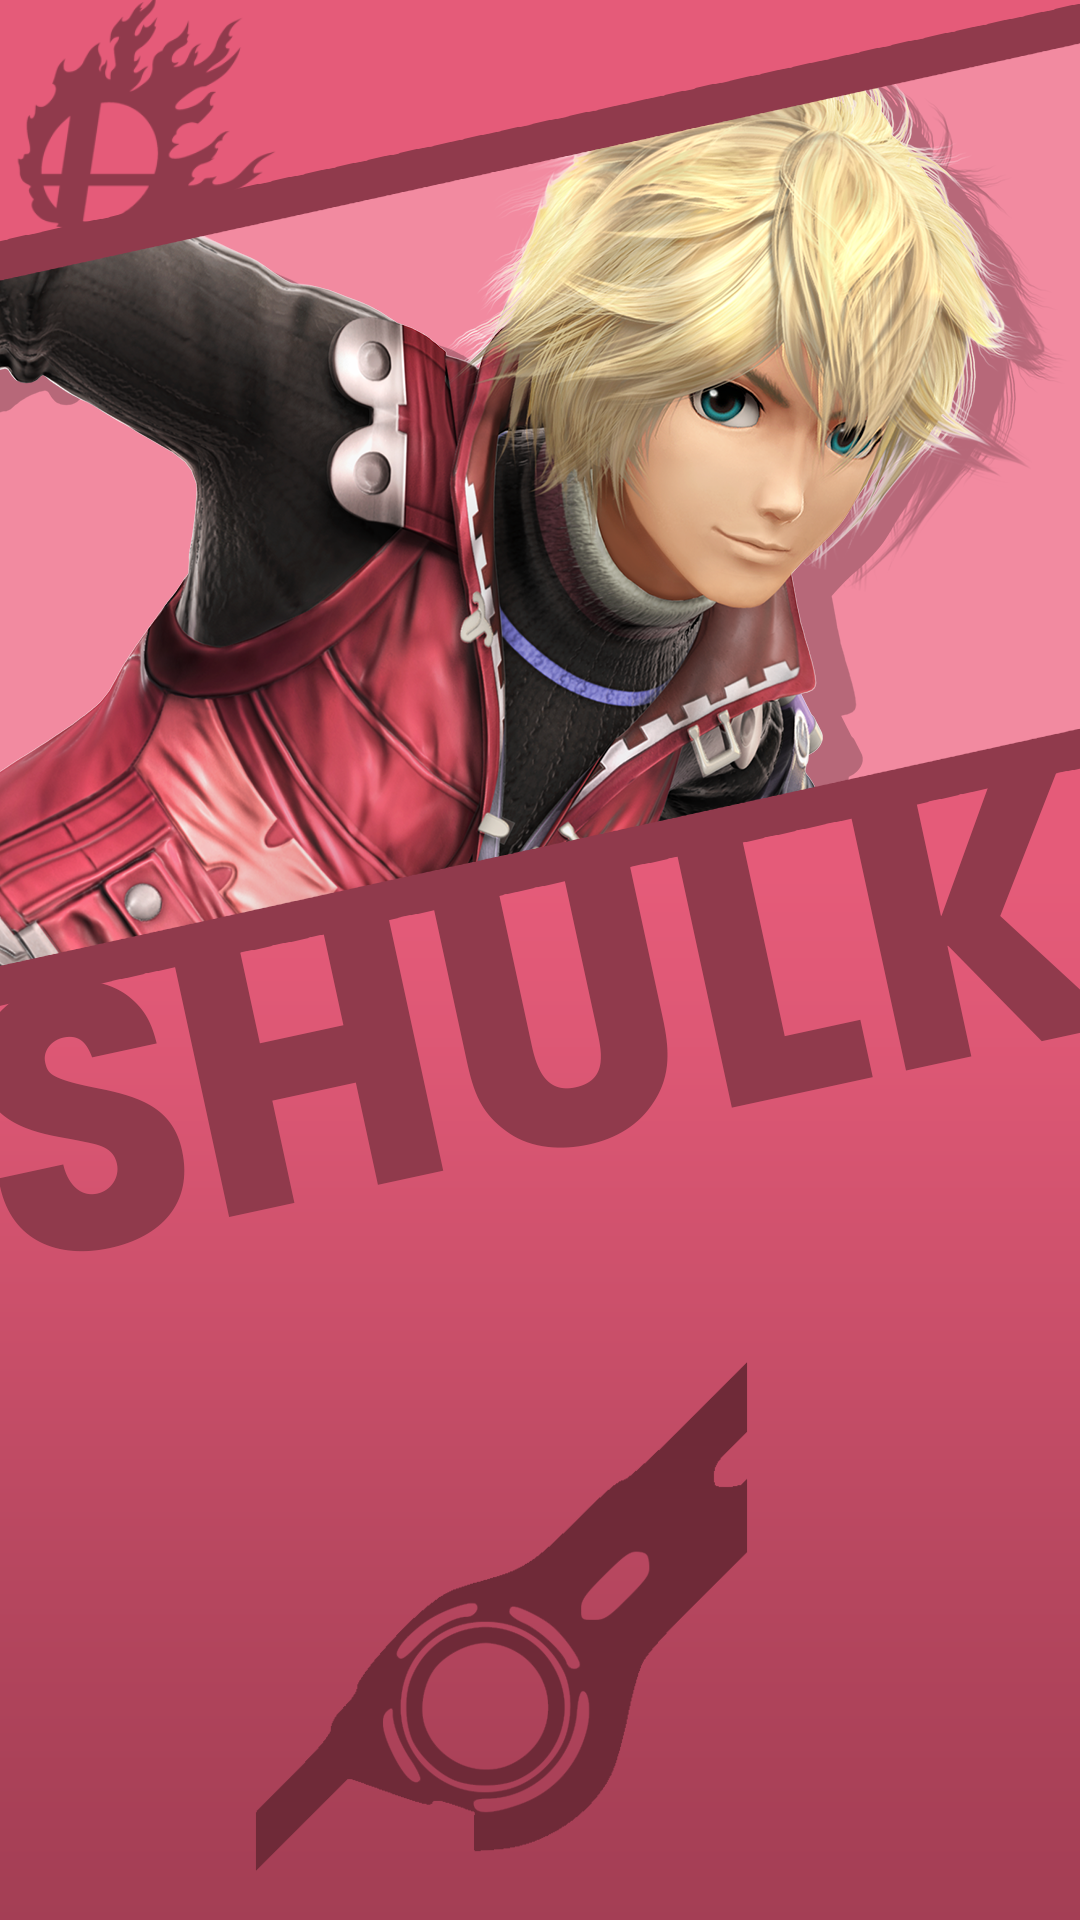 Image Result For Shulk Wallpaper iPhone Nintendo Super Smash